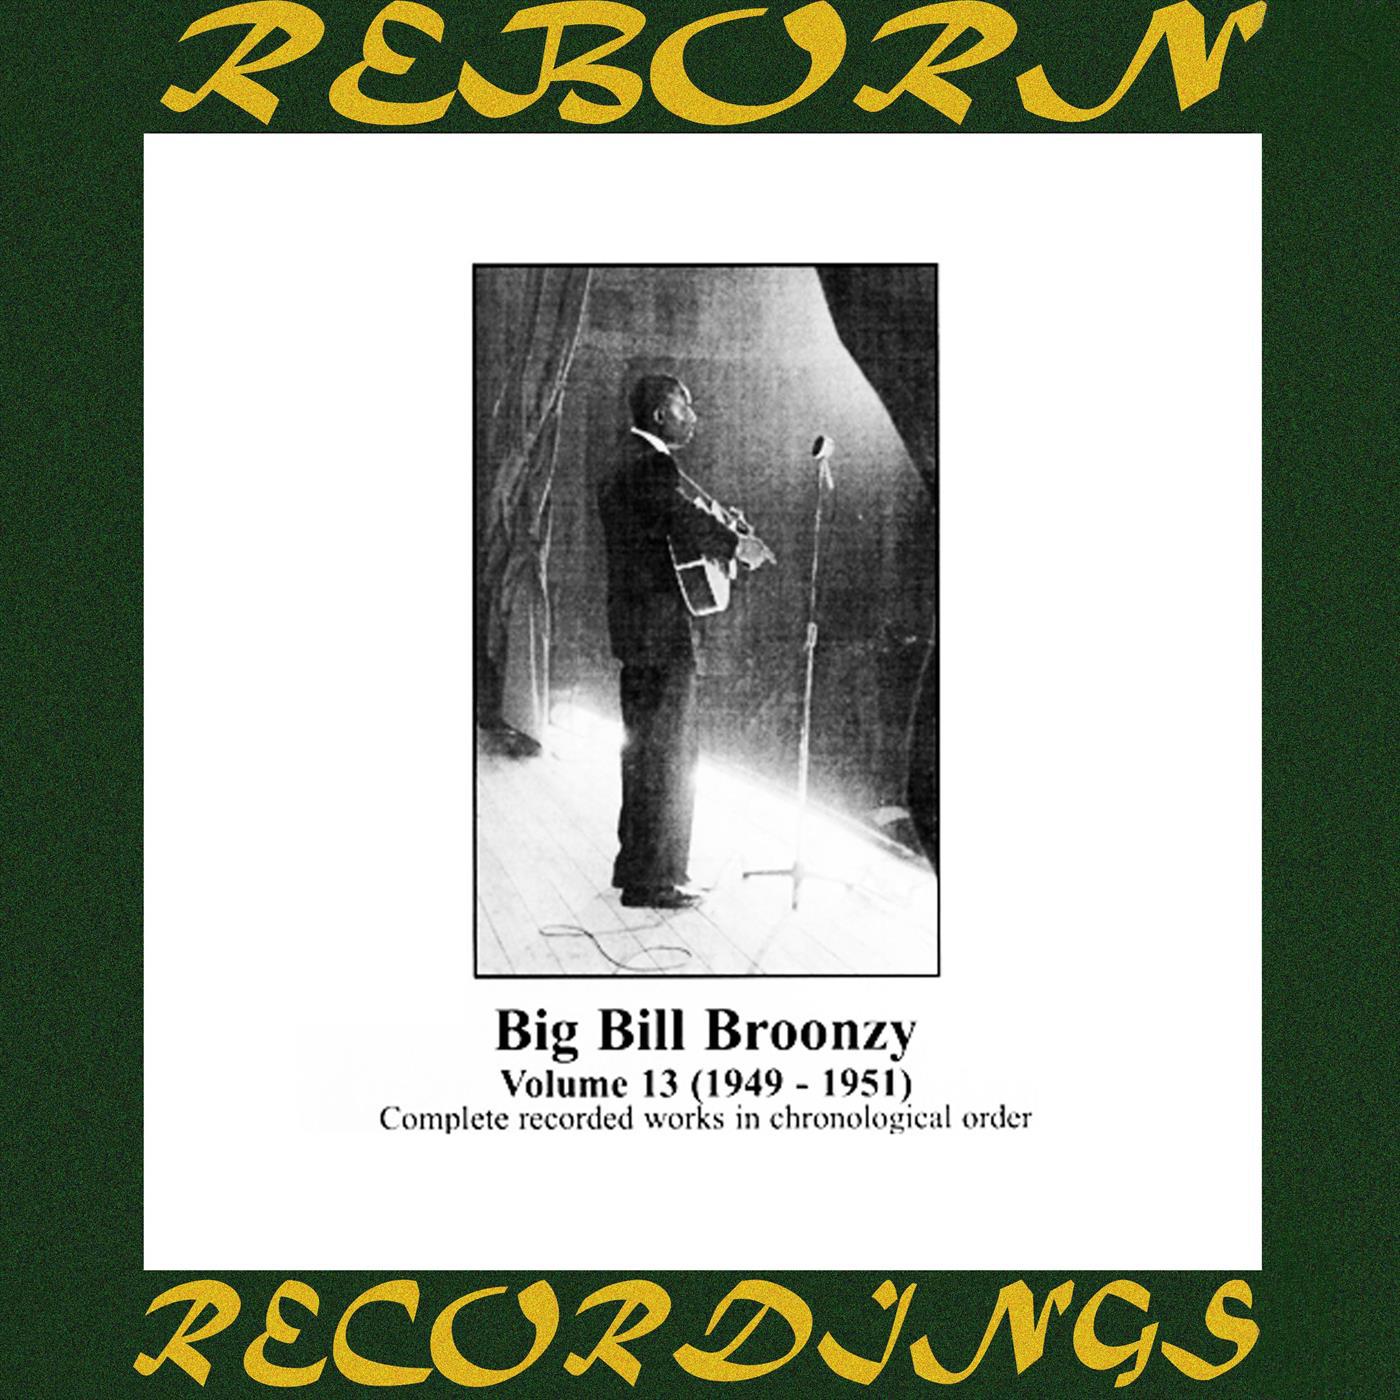 Big Bill Broonzy, Vol. 13 1949-1951 (HD Remastered)